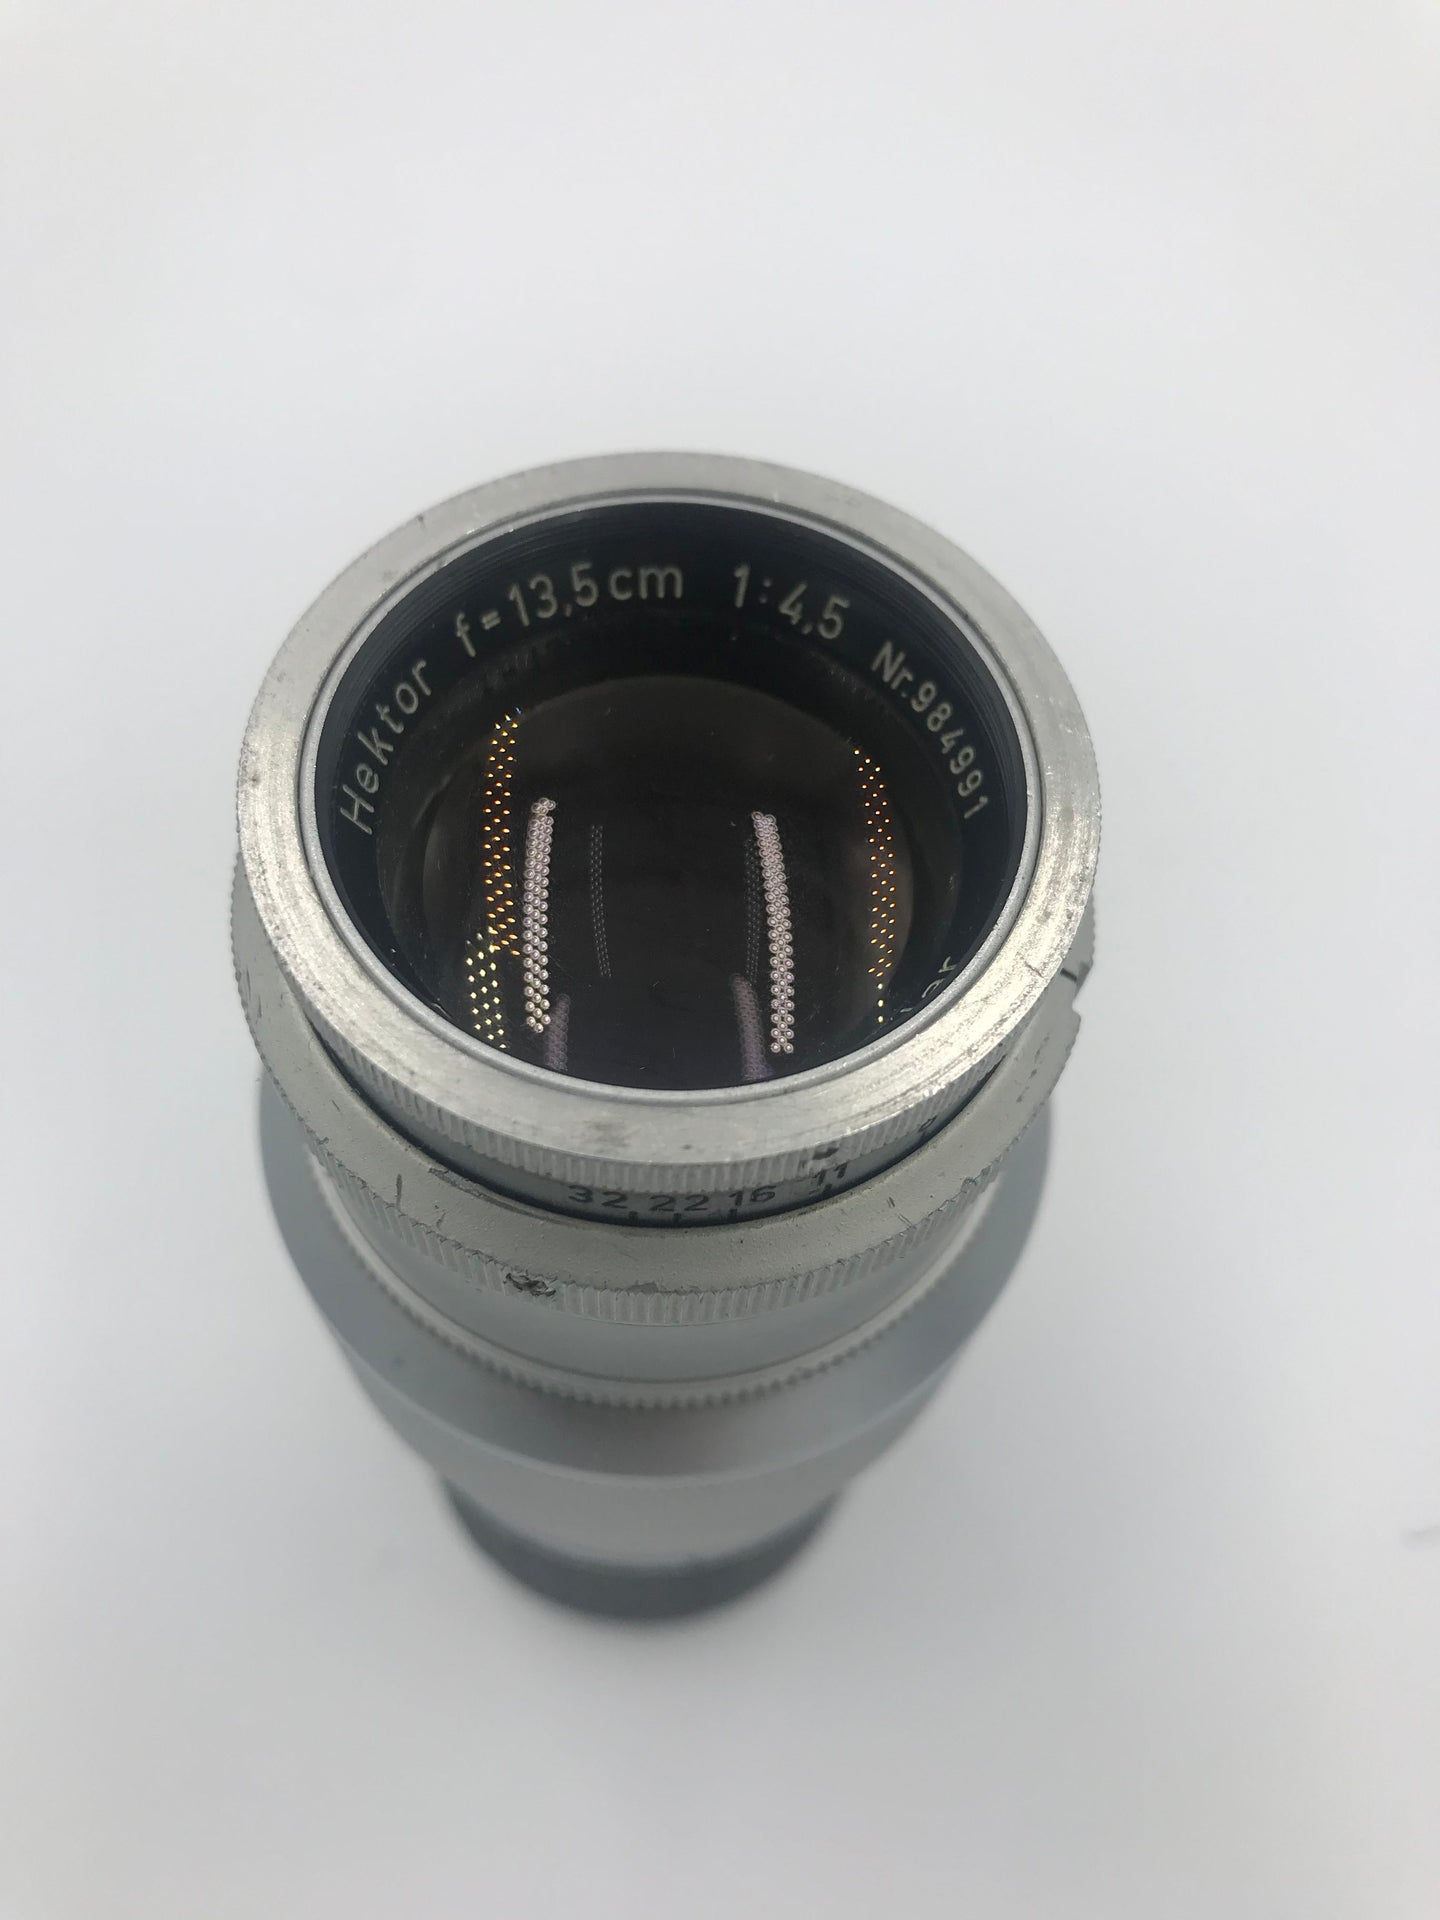 Leitz Wetzlar 135mm 4.5 Hektor Lens for Leica - Leica